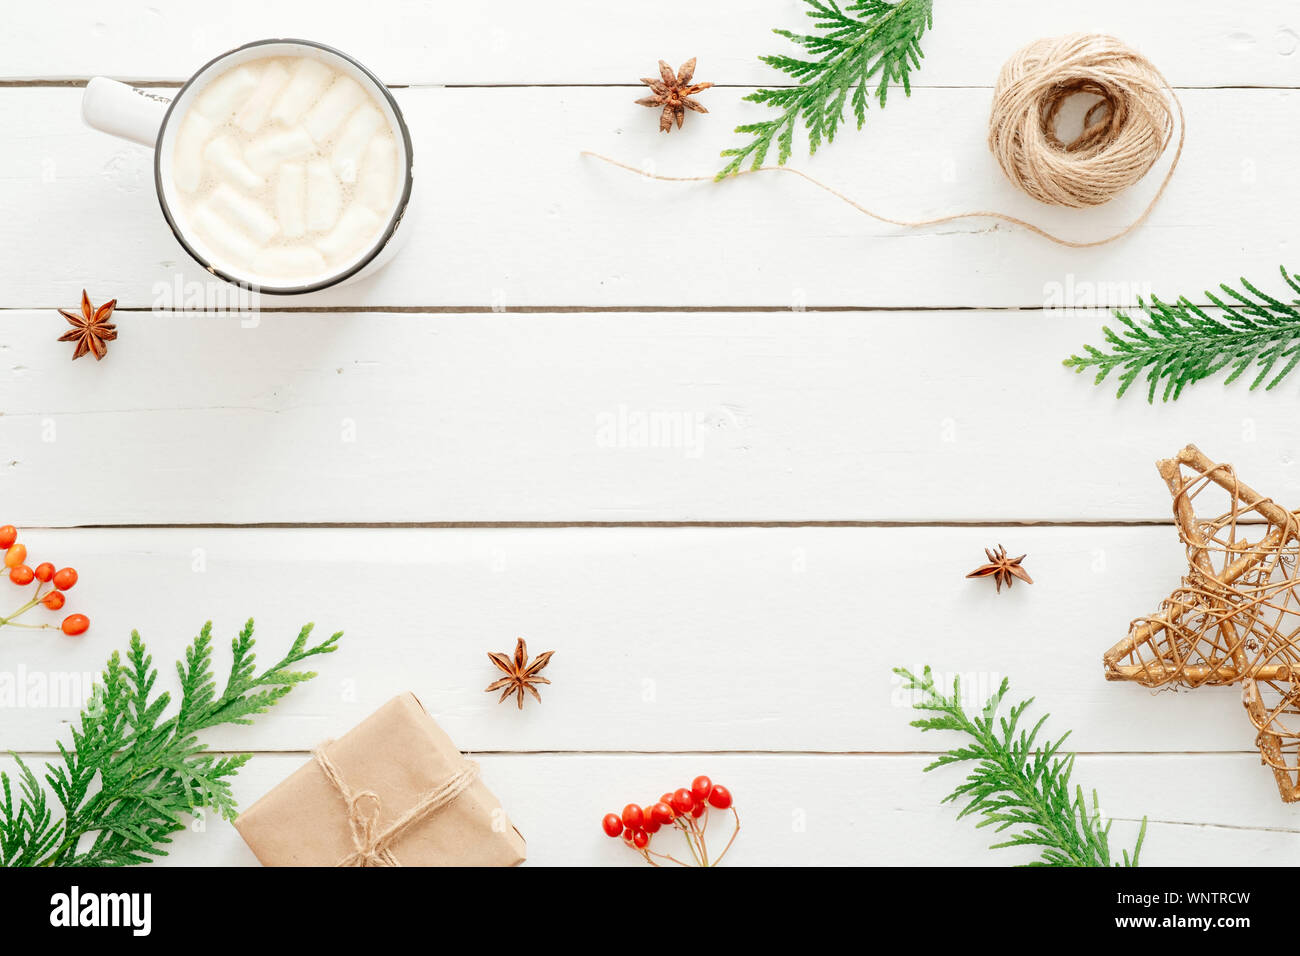 Composizione di natale. Cornice in abete rami, decorazioni di Natale, tazza di cioccolata calda con marshmallow, bacca rossa di legno su sfondo bianco. Foto Stock